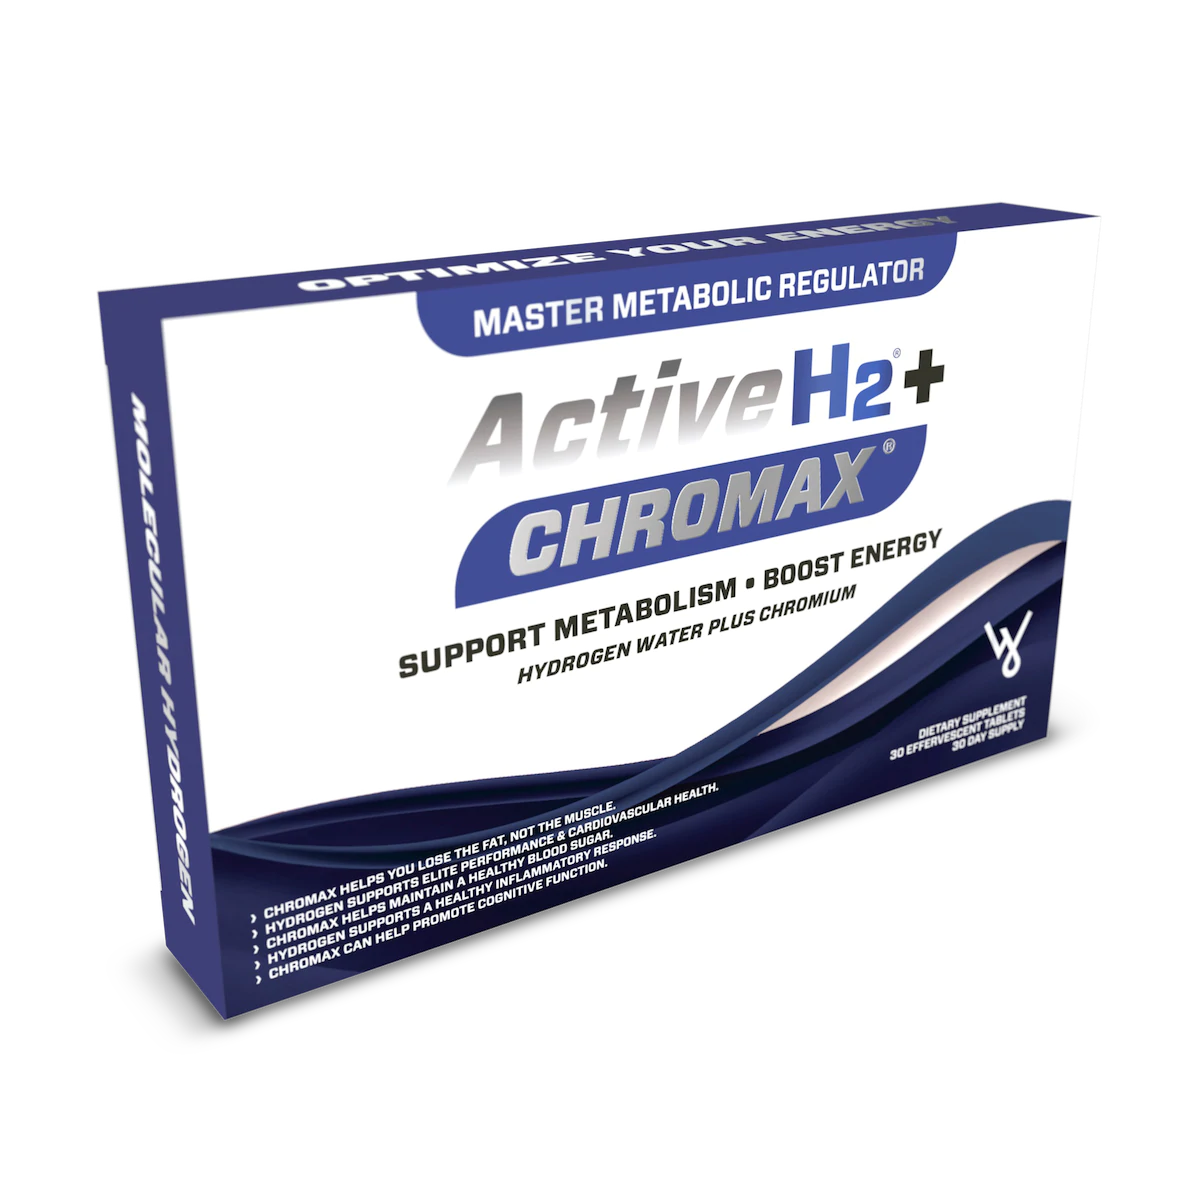 Active H2+ Chromax